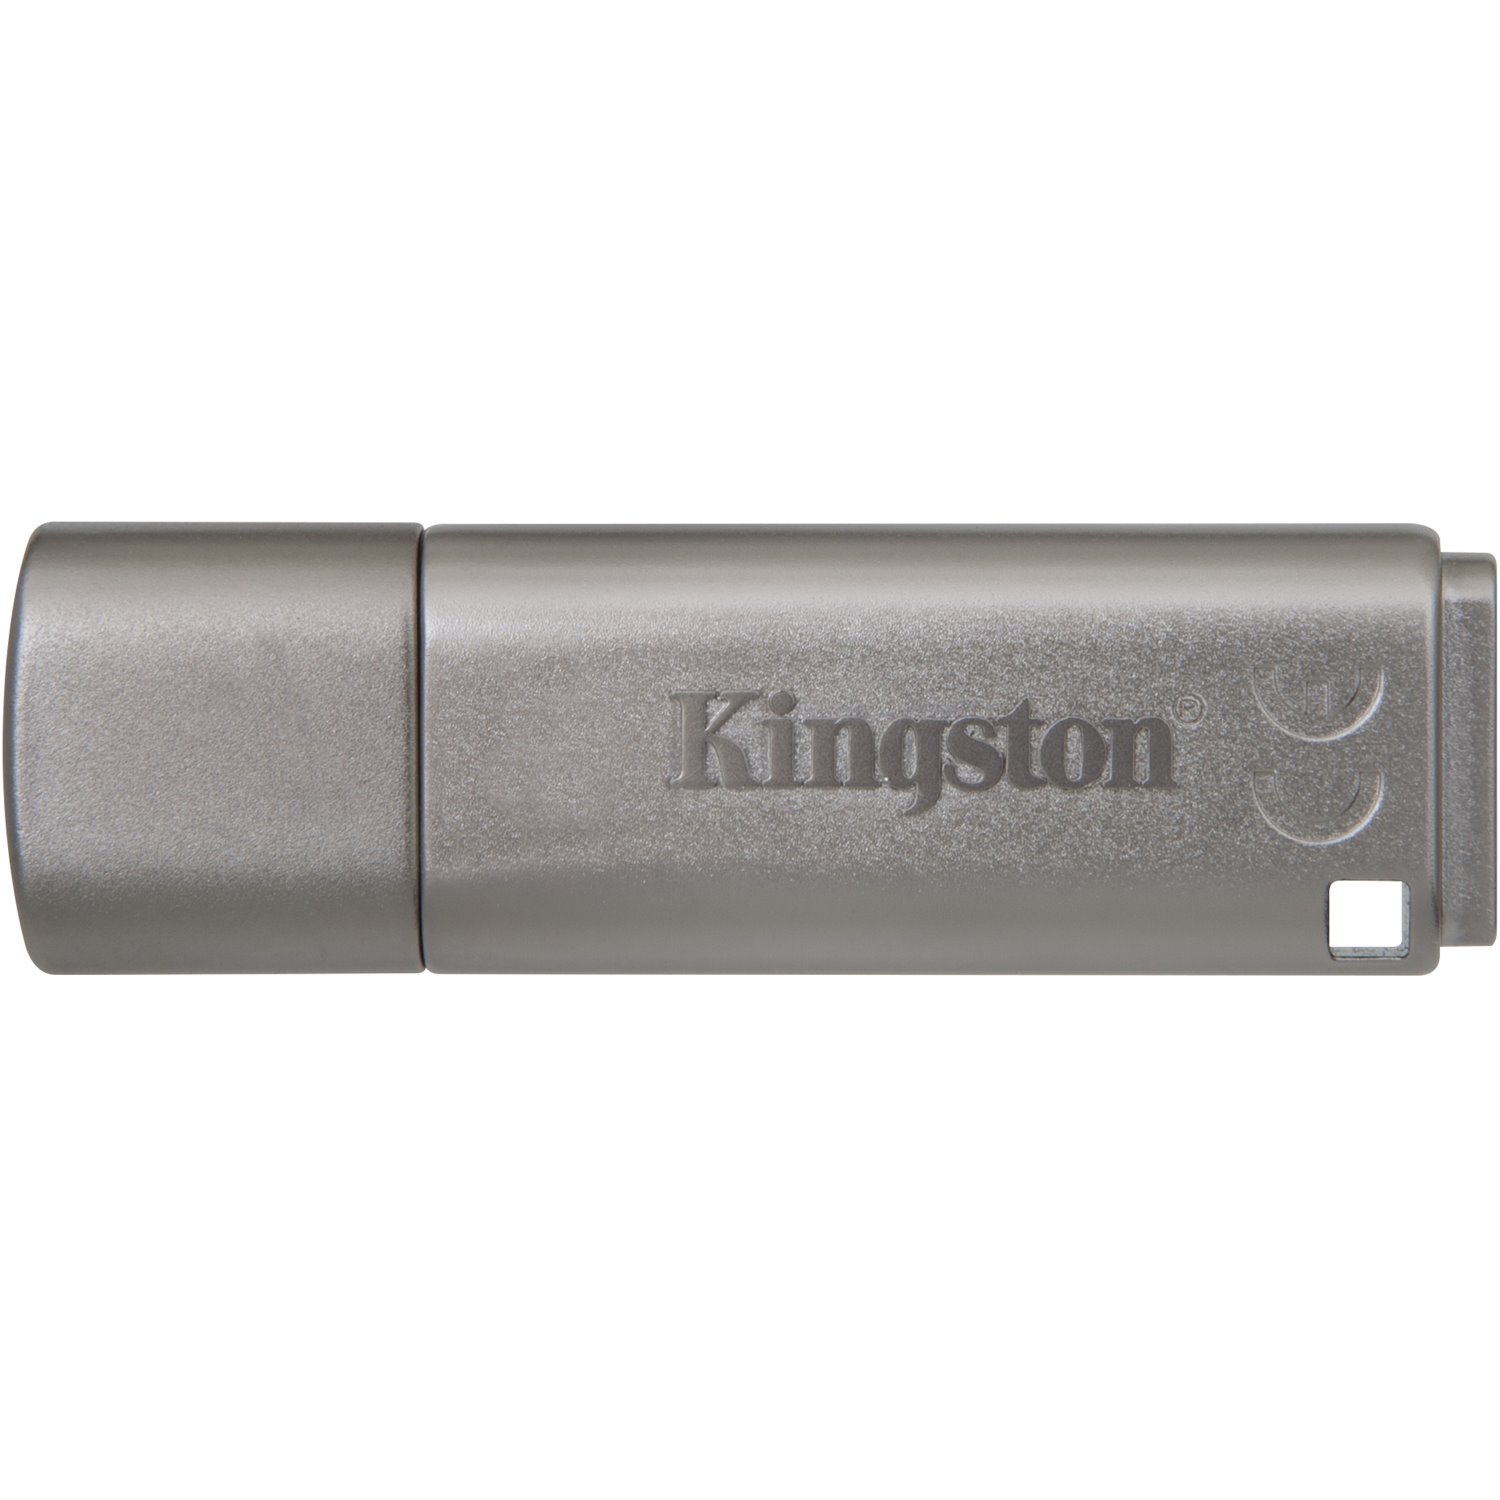 Kingston 8GB DataTraveler Locker+ G3 USB 3.0 Flash Drive